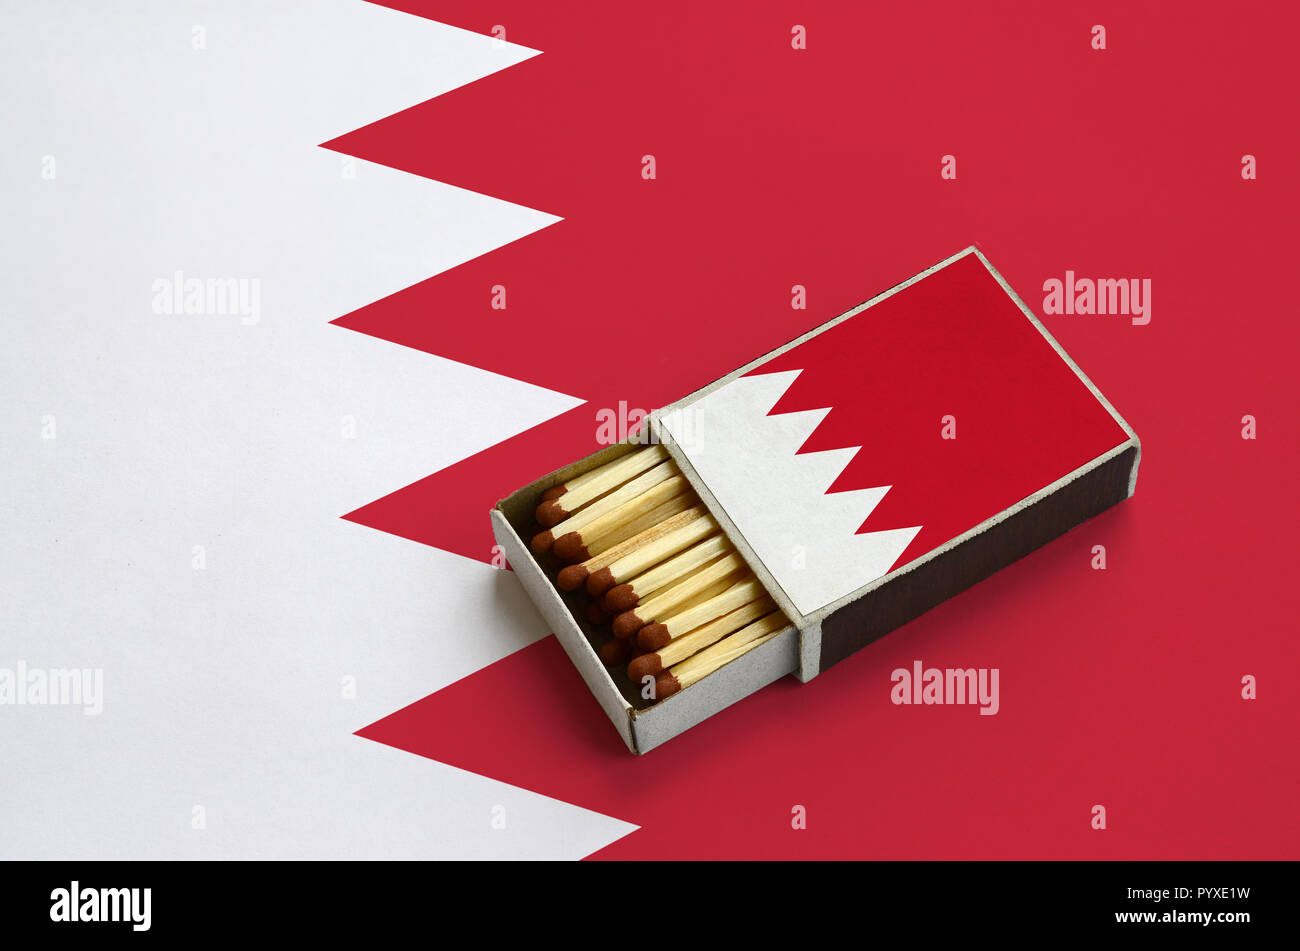 Drapeau de Bahreïn est illustré dans une boîte d'allumettes, qui est rempli avec des allumettes et se trouve sur un grand drapeau. Banque D'Images